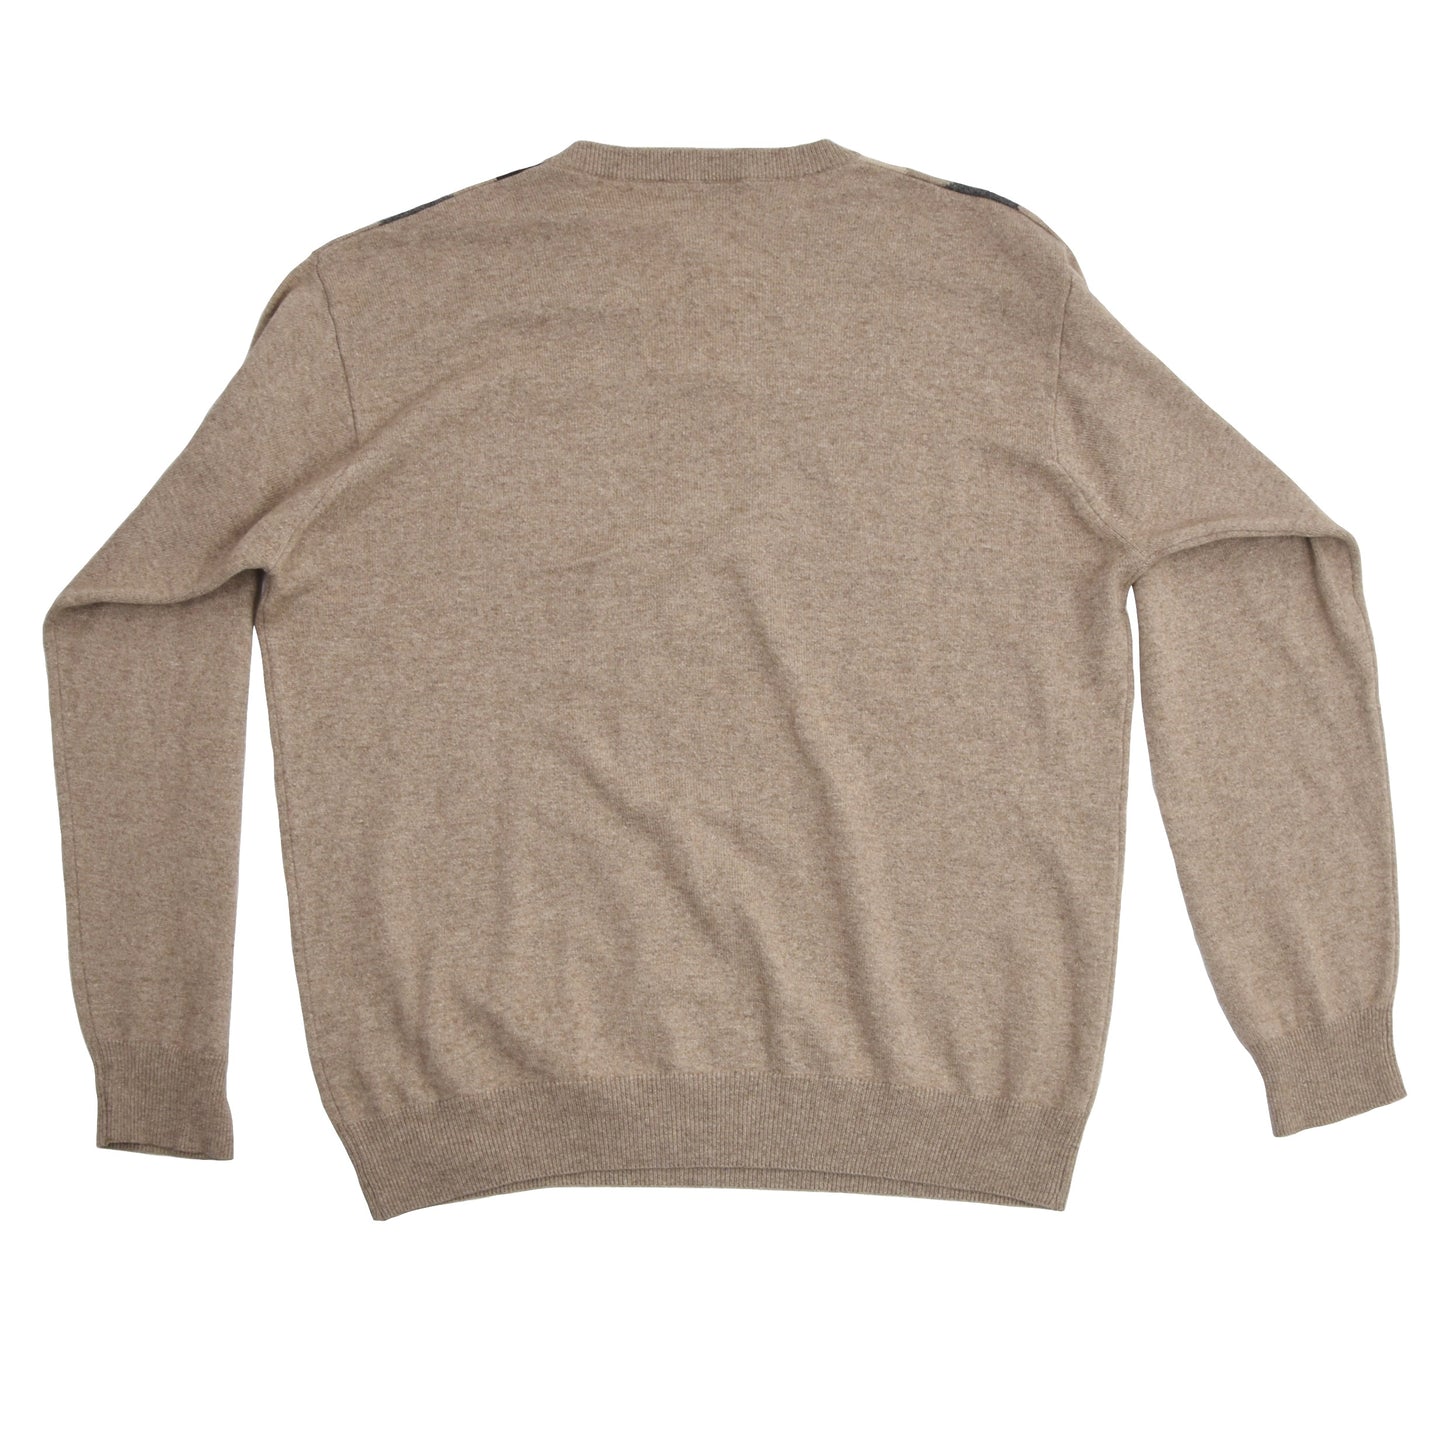 Brian Scott Collection Sweater 50/50 Cashmere/Silk Size M - Argyle